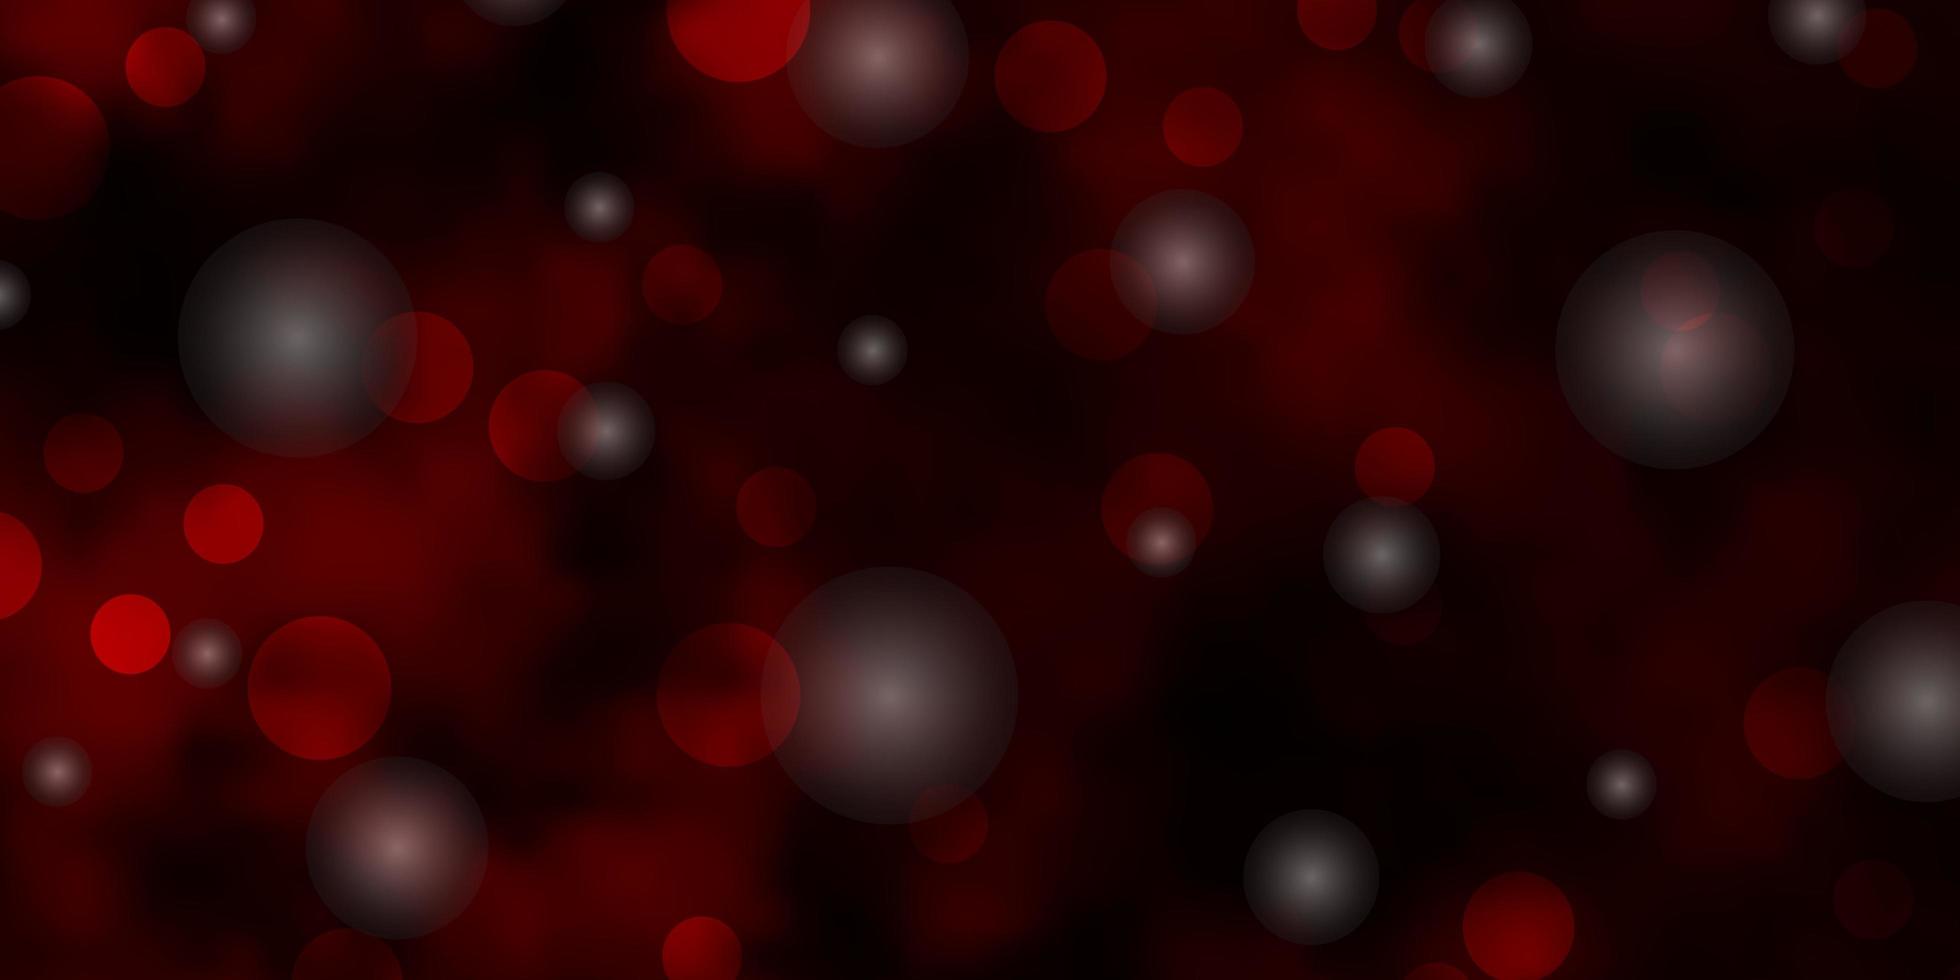 padrão de vetor vermelho escuro com círculos, estrelas.